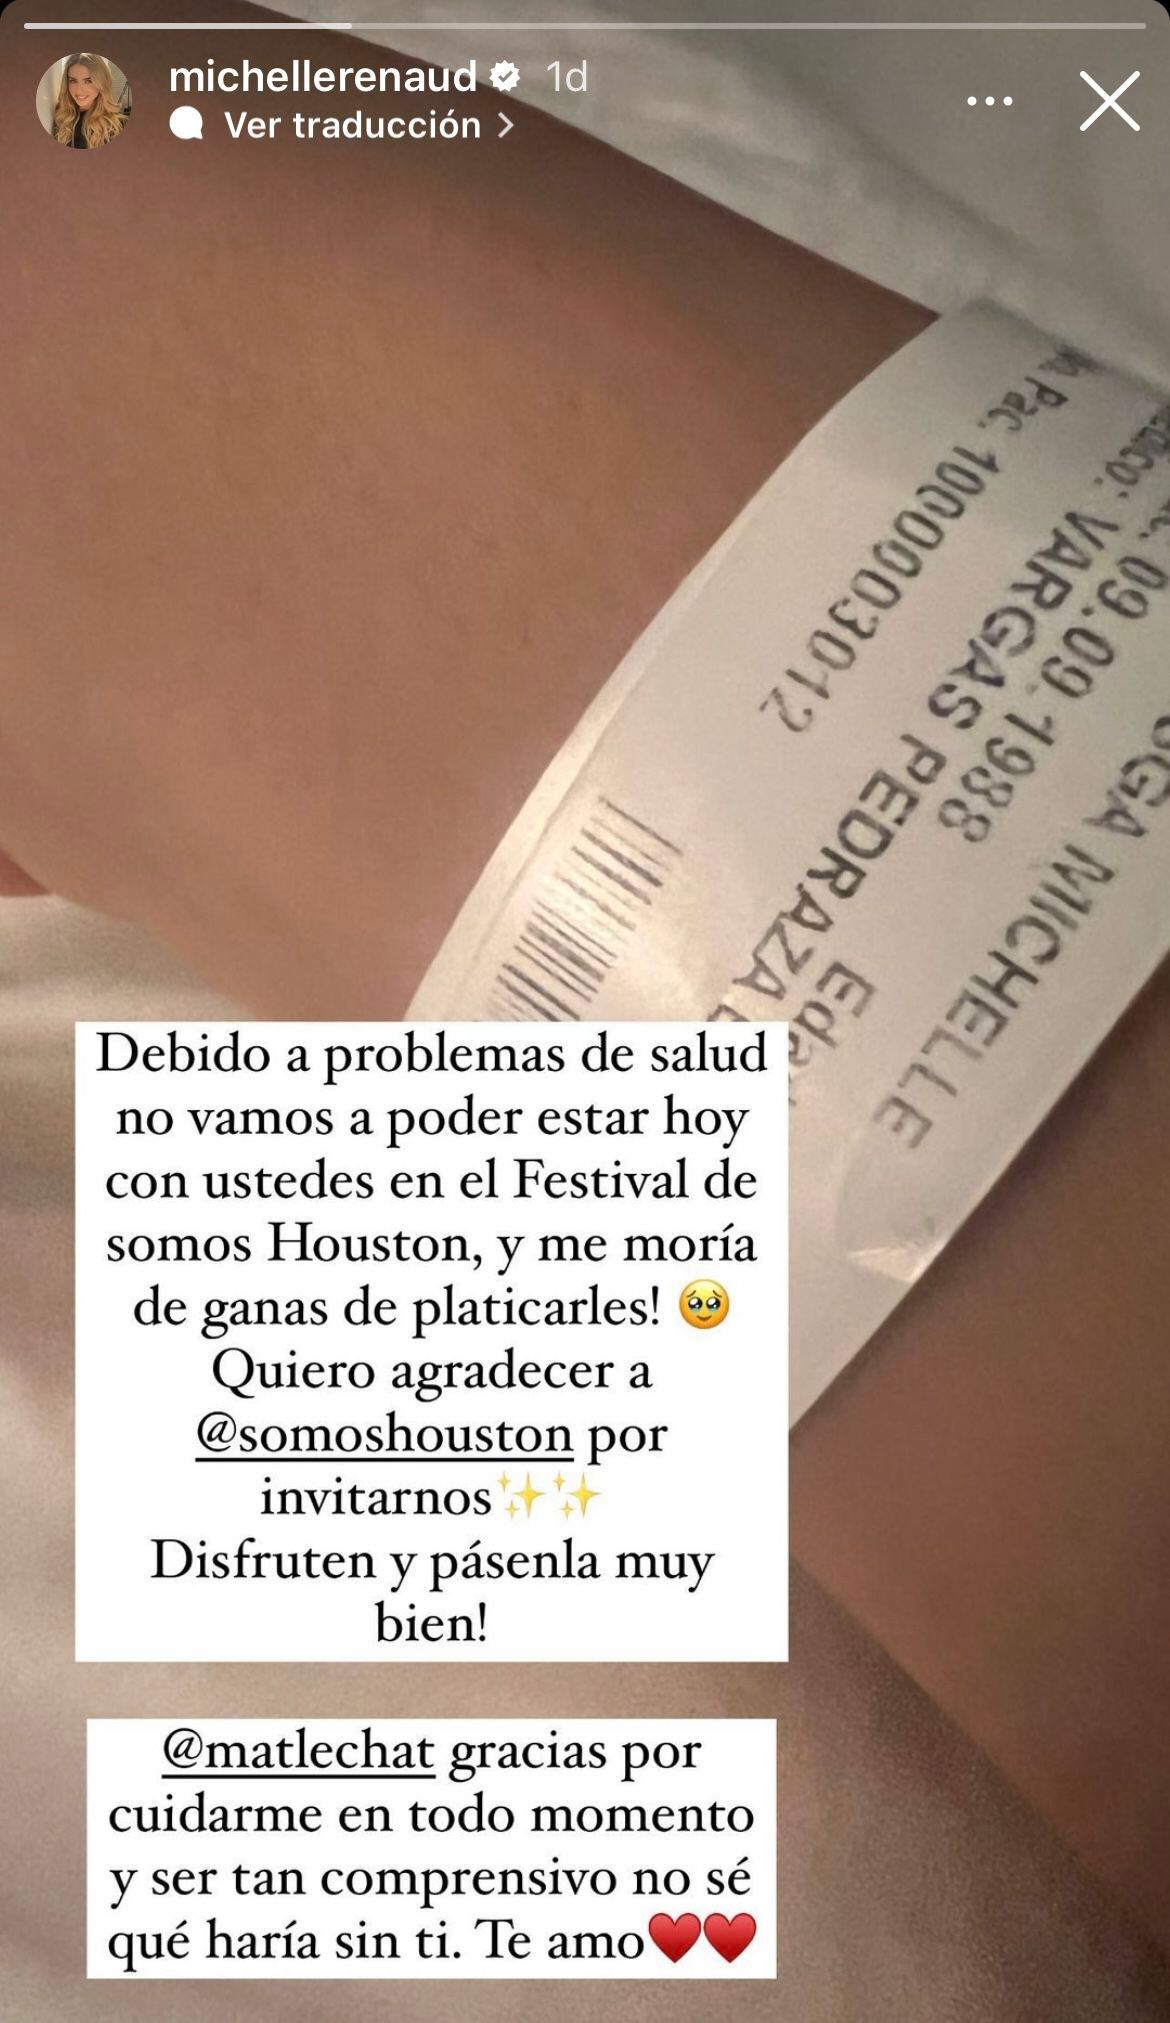 Michelle Renaud canceló su participación en un evento por problemas de salud. (Foto: Instagram / @michellerenaud)